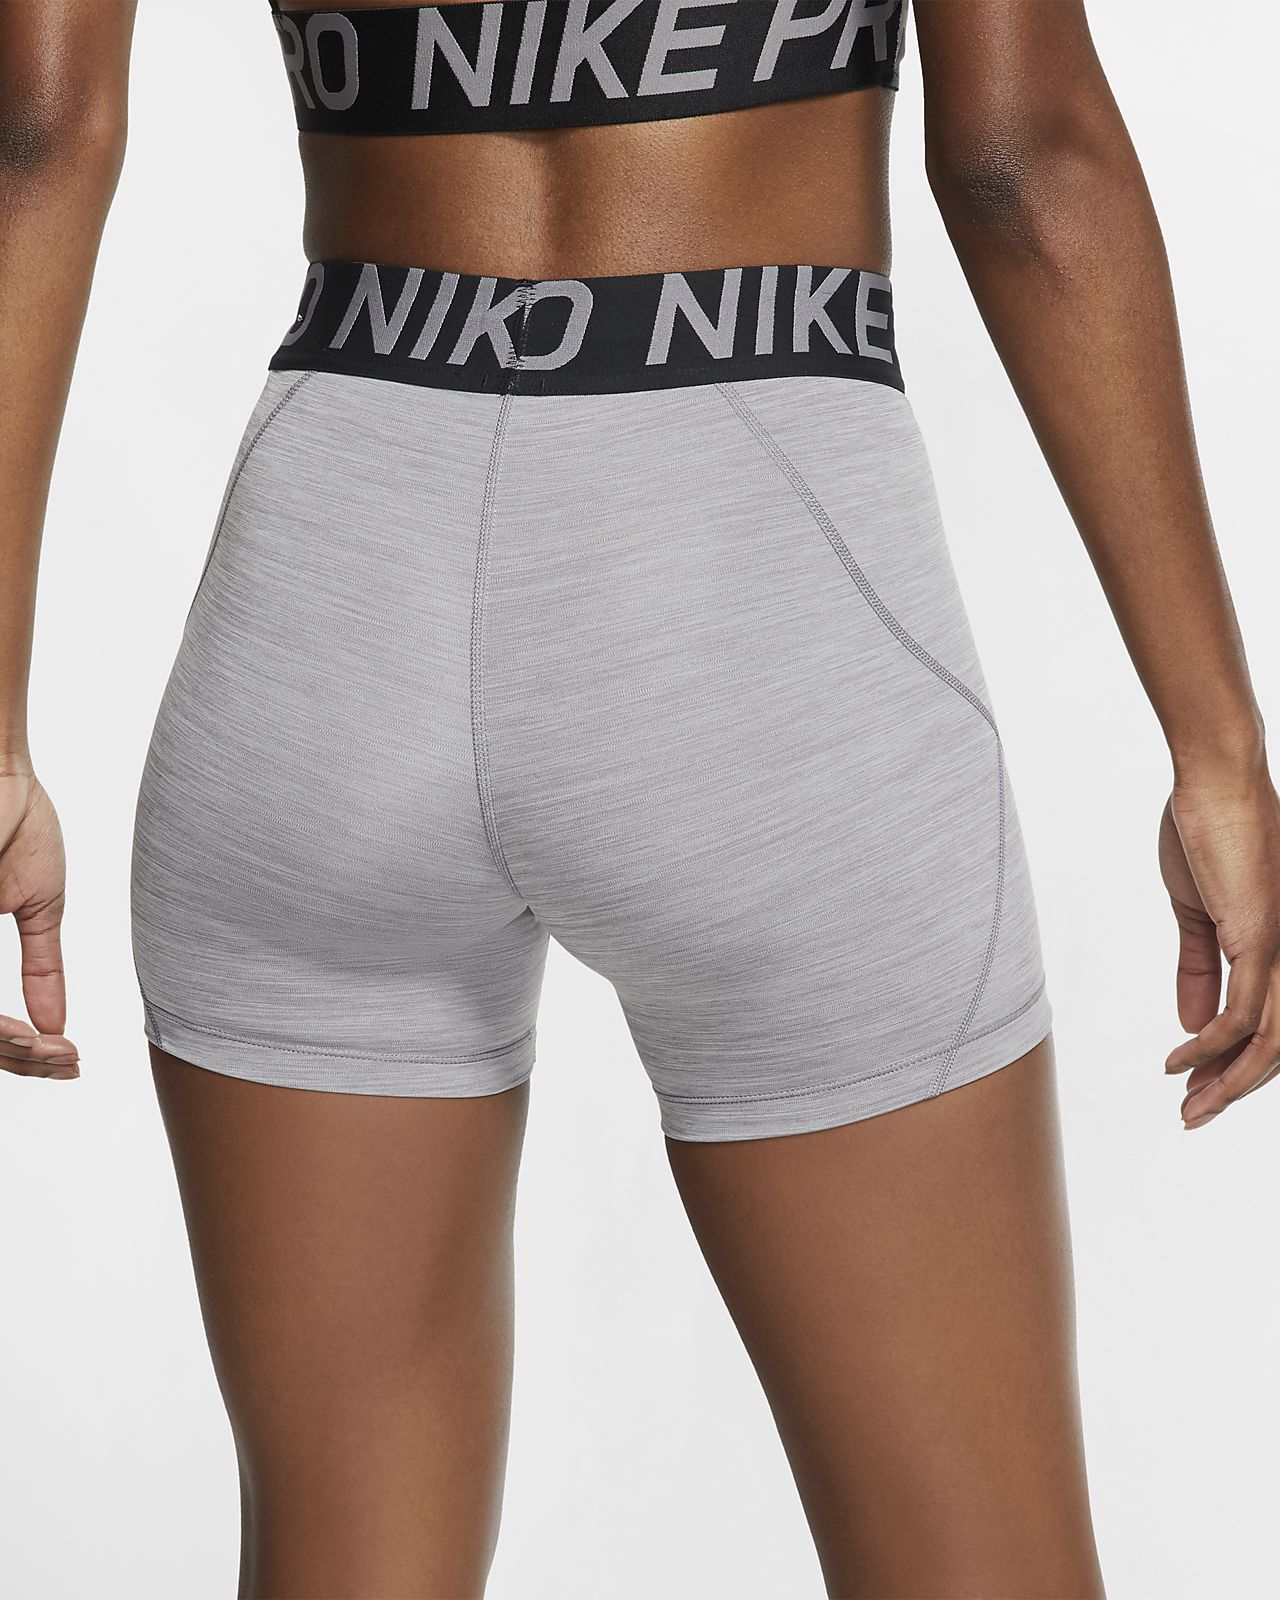 big 5 nike pro shorts